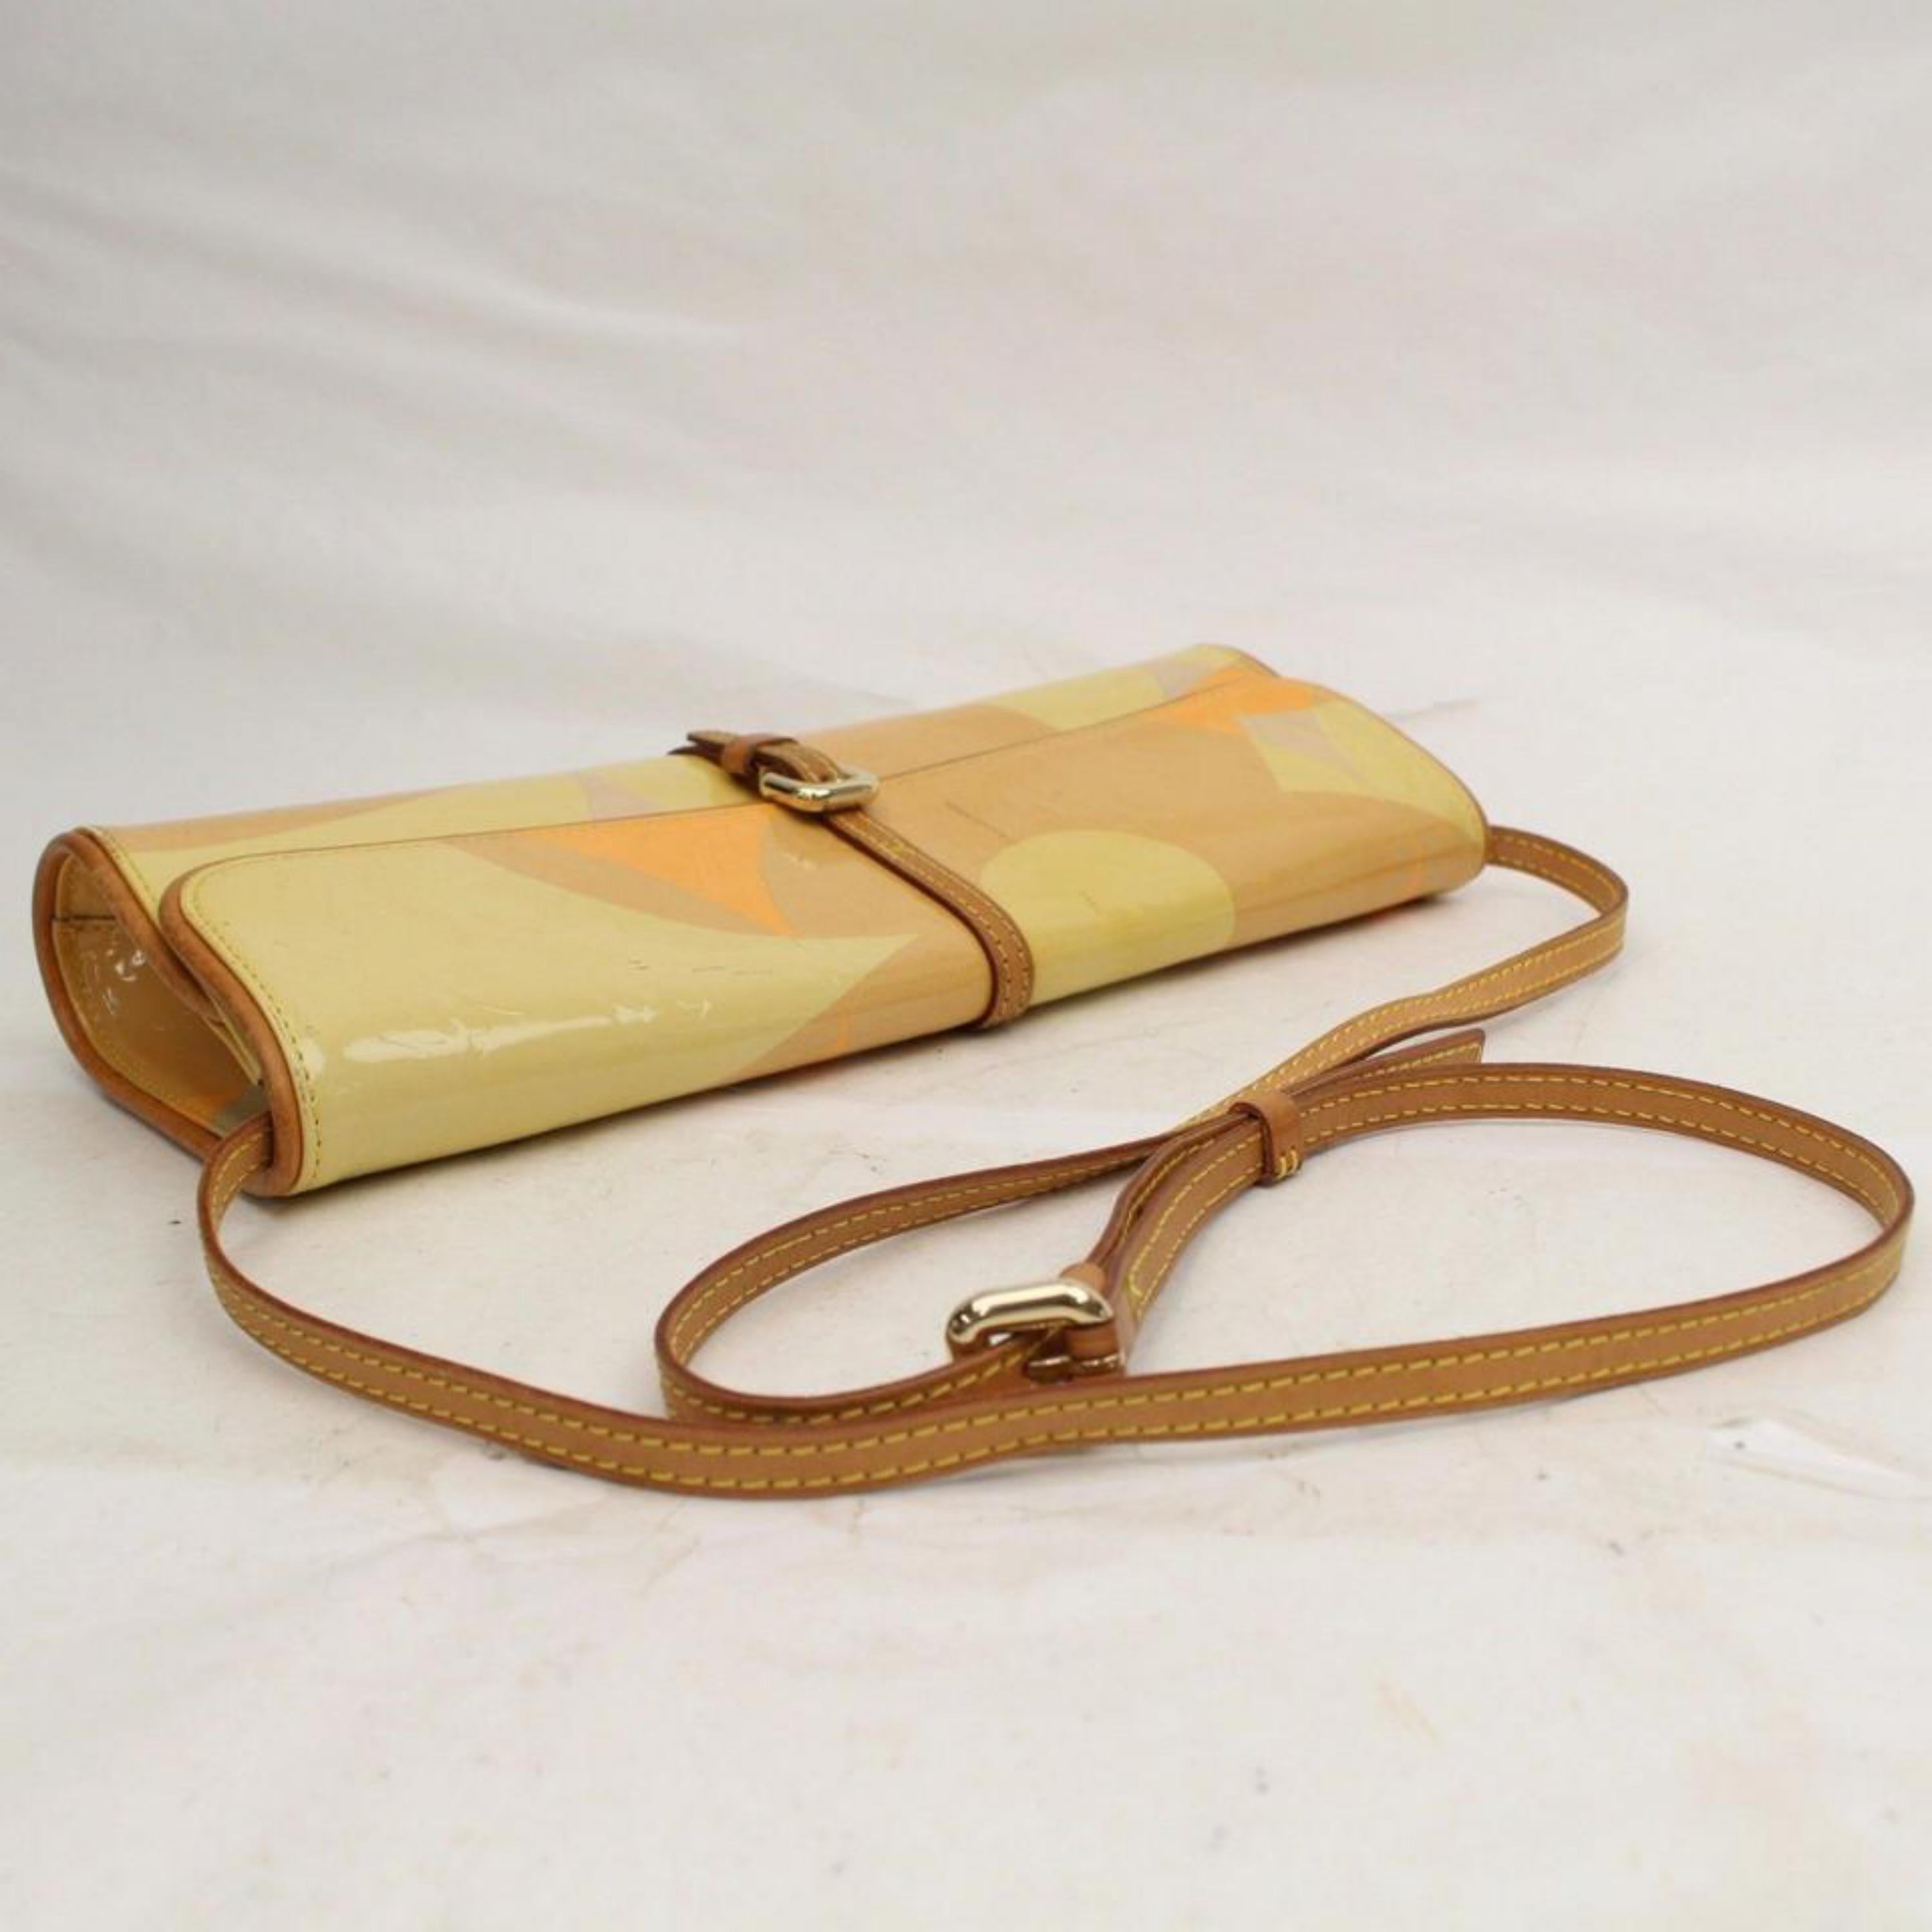 Louis Vuitton Pochette Monogram Vernis Fleur 868598 Yellow Patent Leather Should For Sale 6